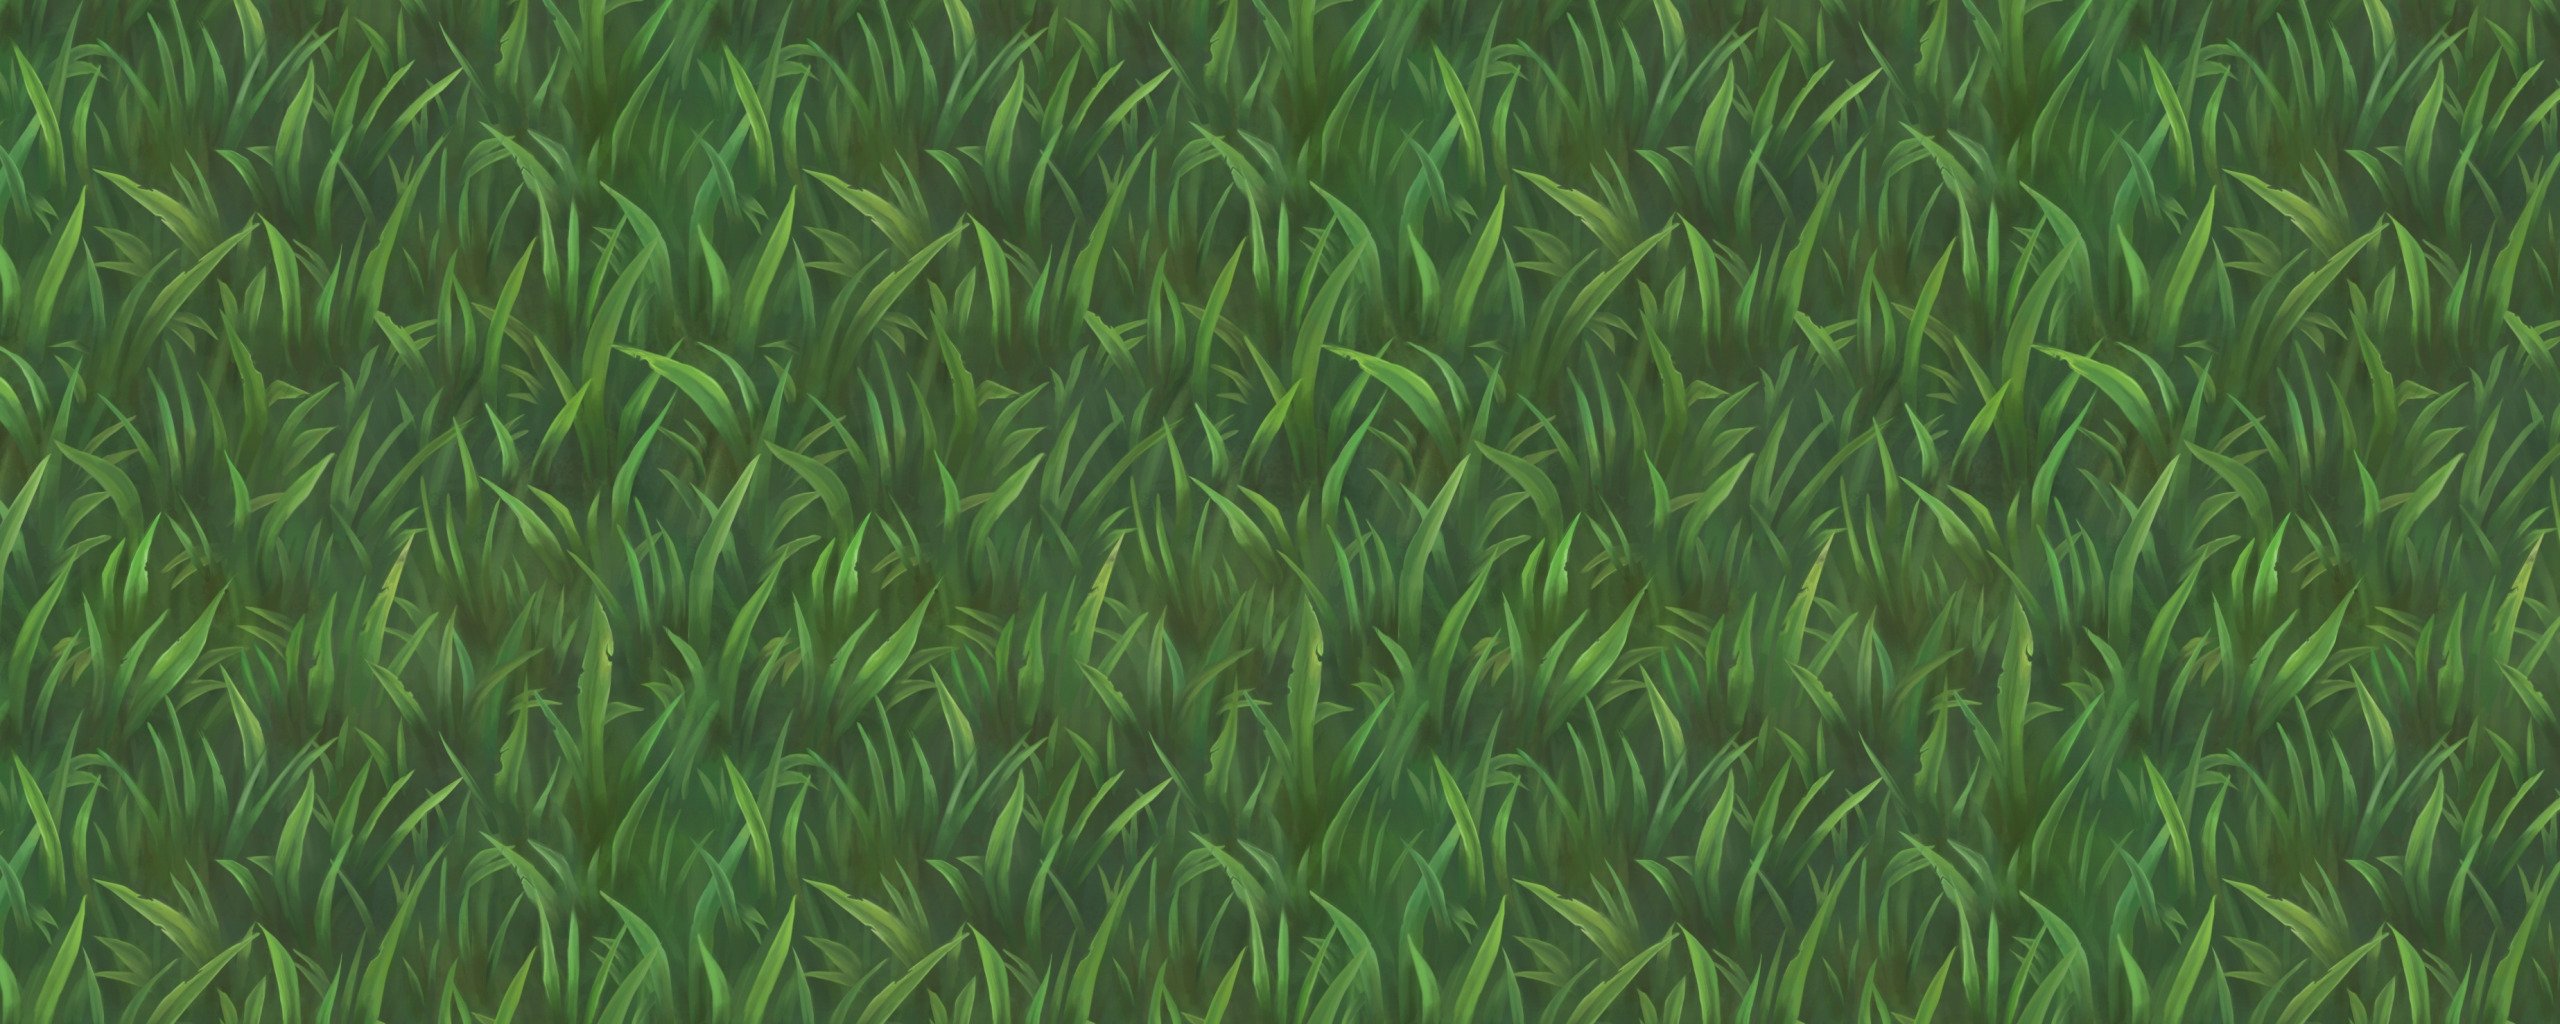 Текстура травы арт